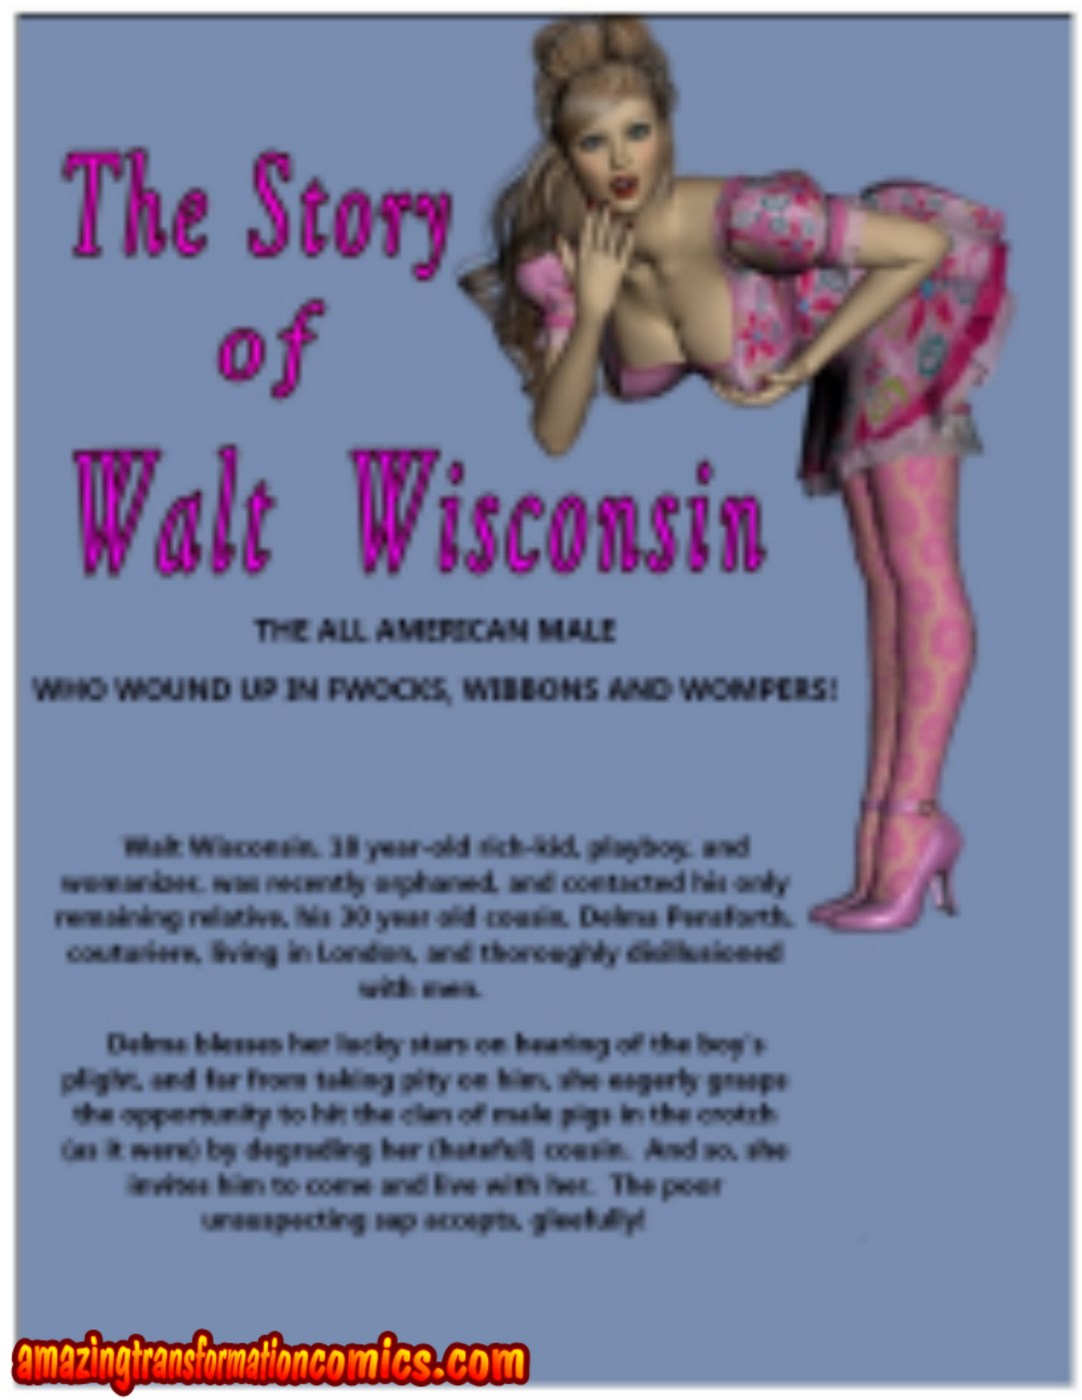 AmazingTransformation - Walt Wisconsin